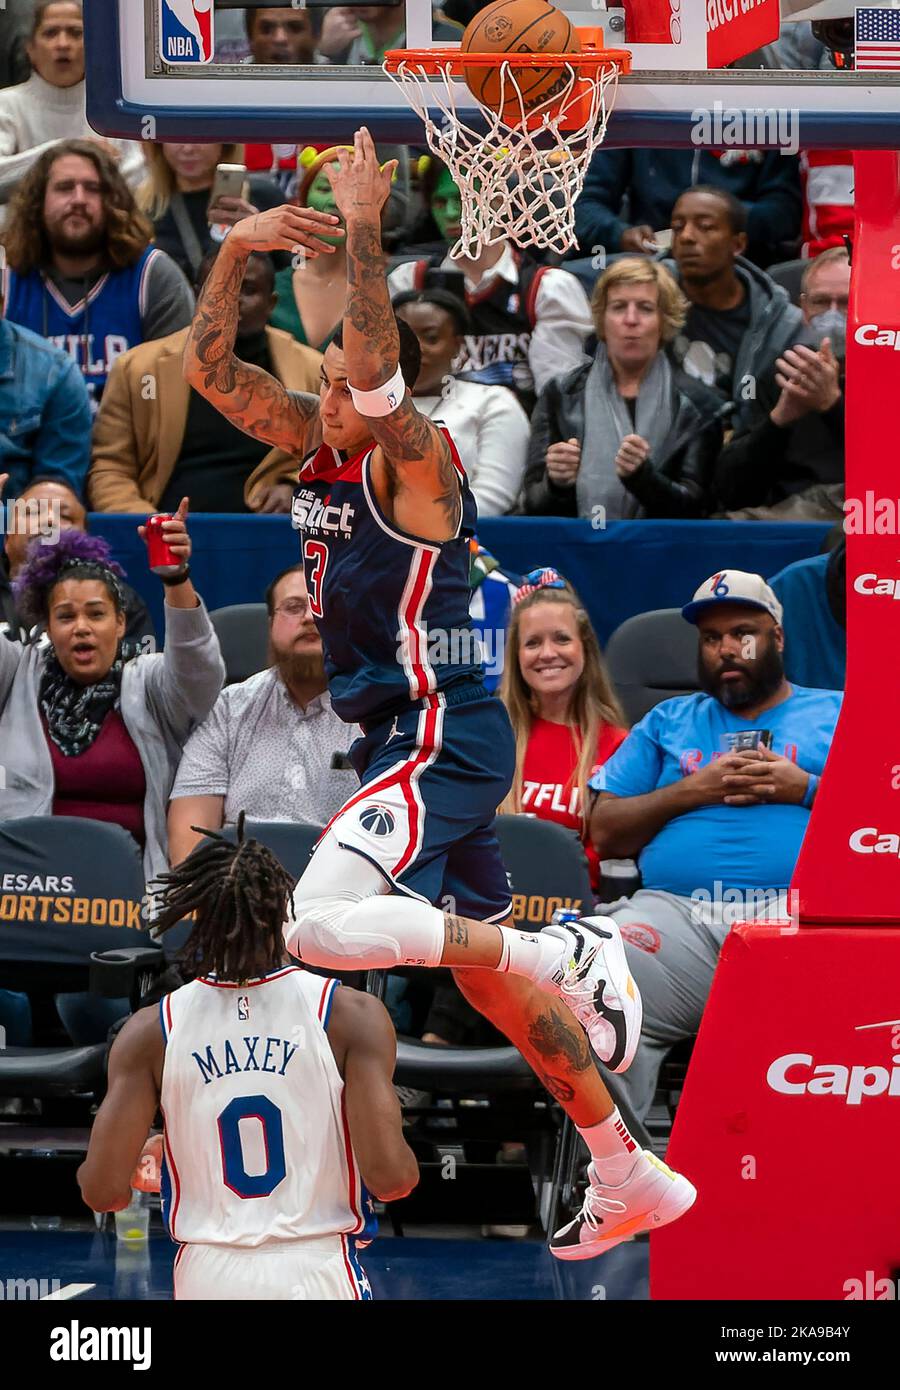 NBA Basketball die Washington Wizards spielen gegen die philadelphia 76ers. Stockfoto